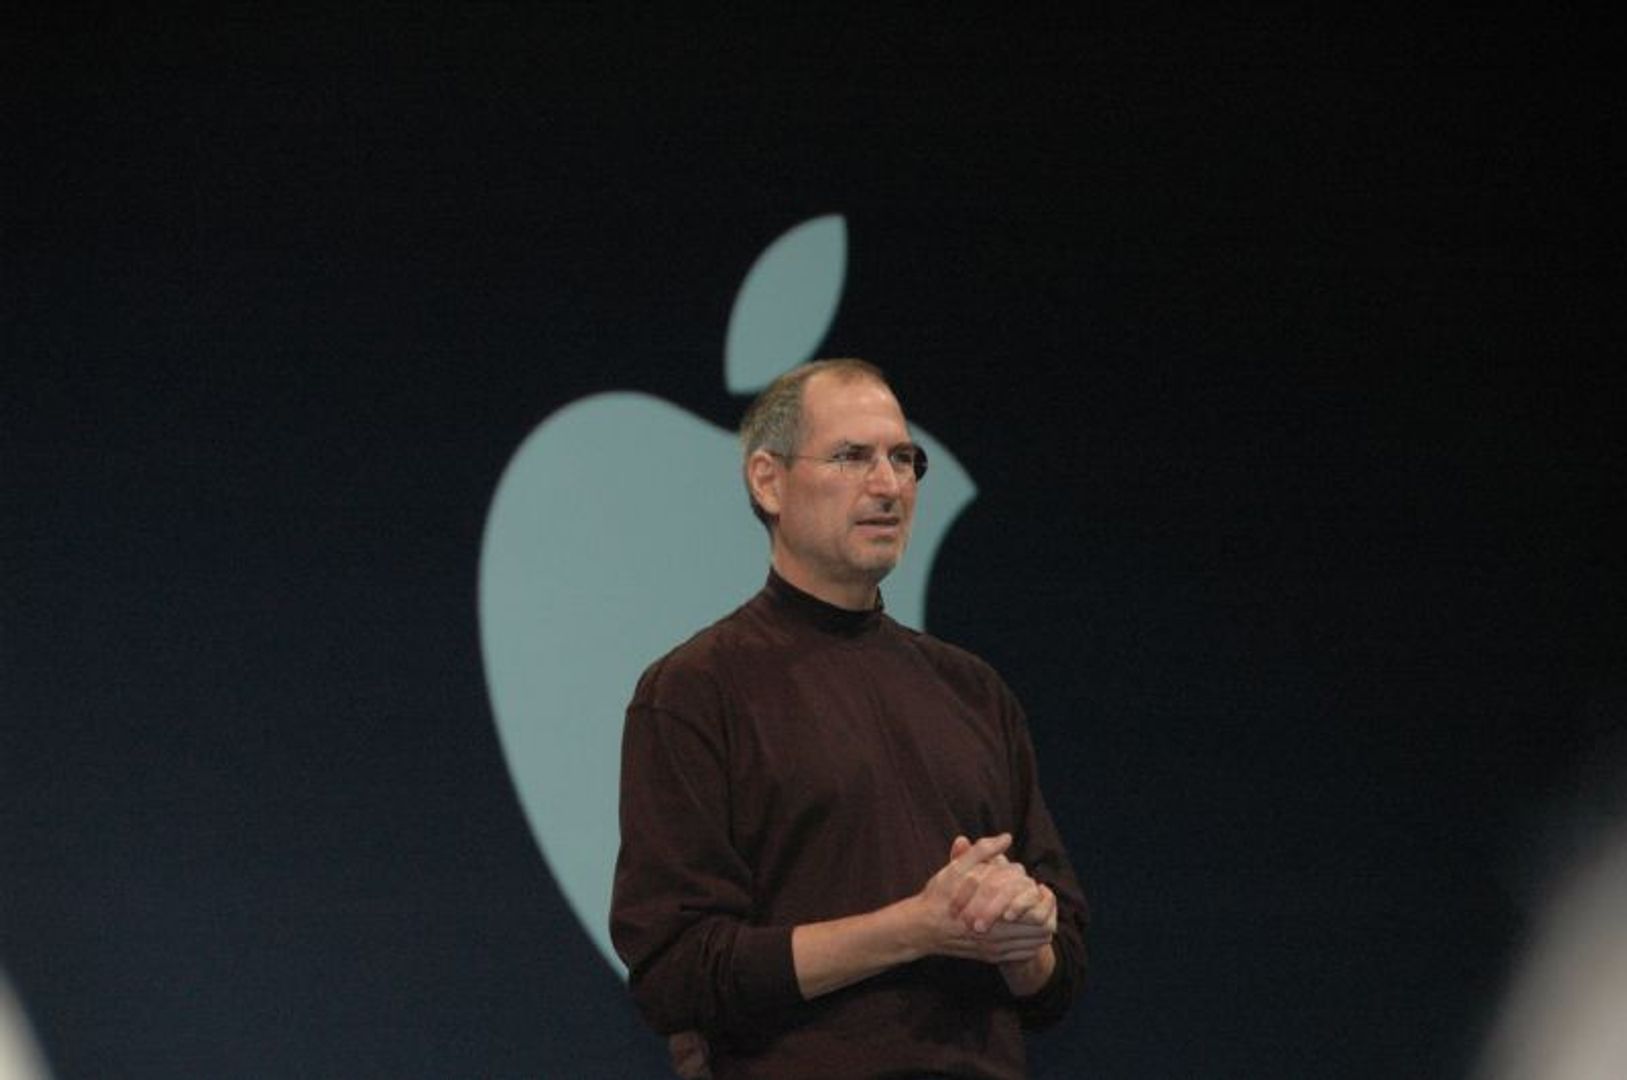 Poslední slova o lásce od Steva Jobse